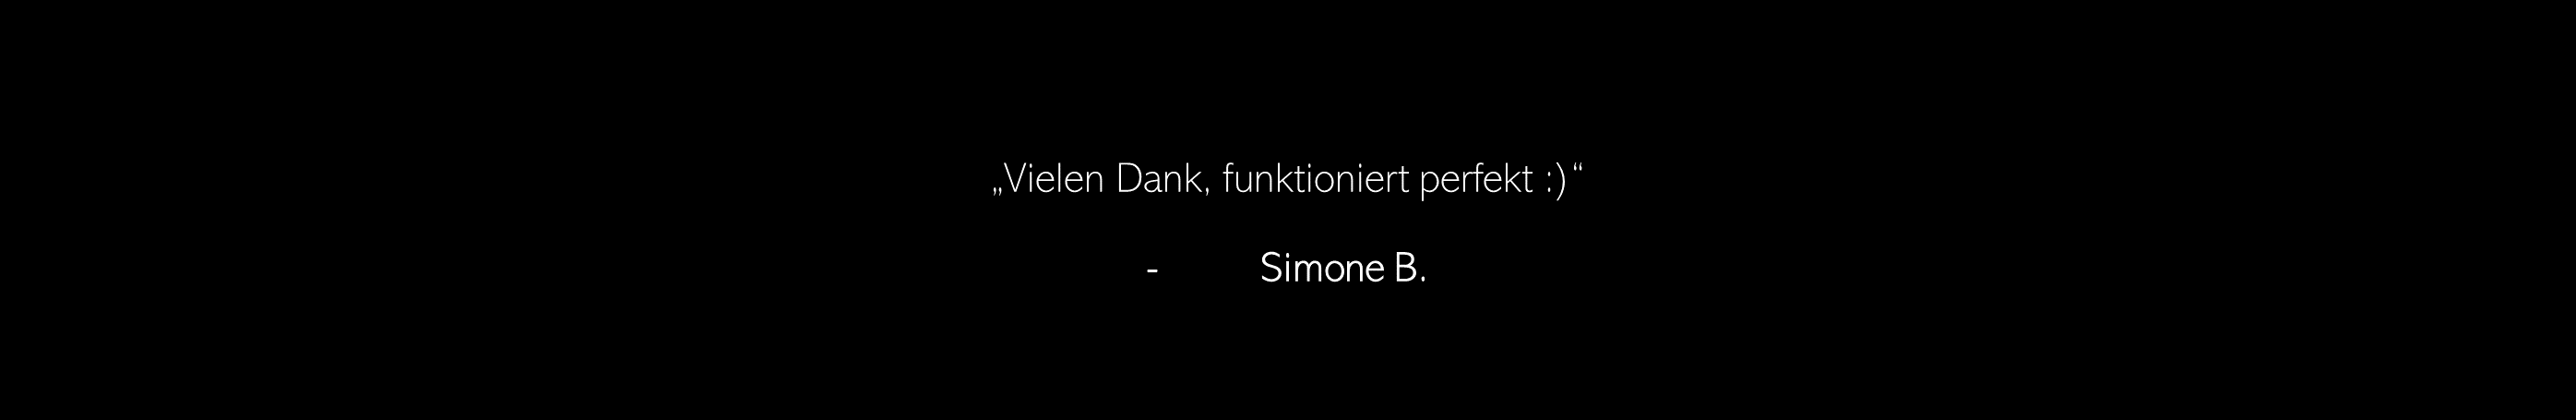 Vielen Dank, funktioniert perfekt :) - Simone B.